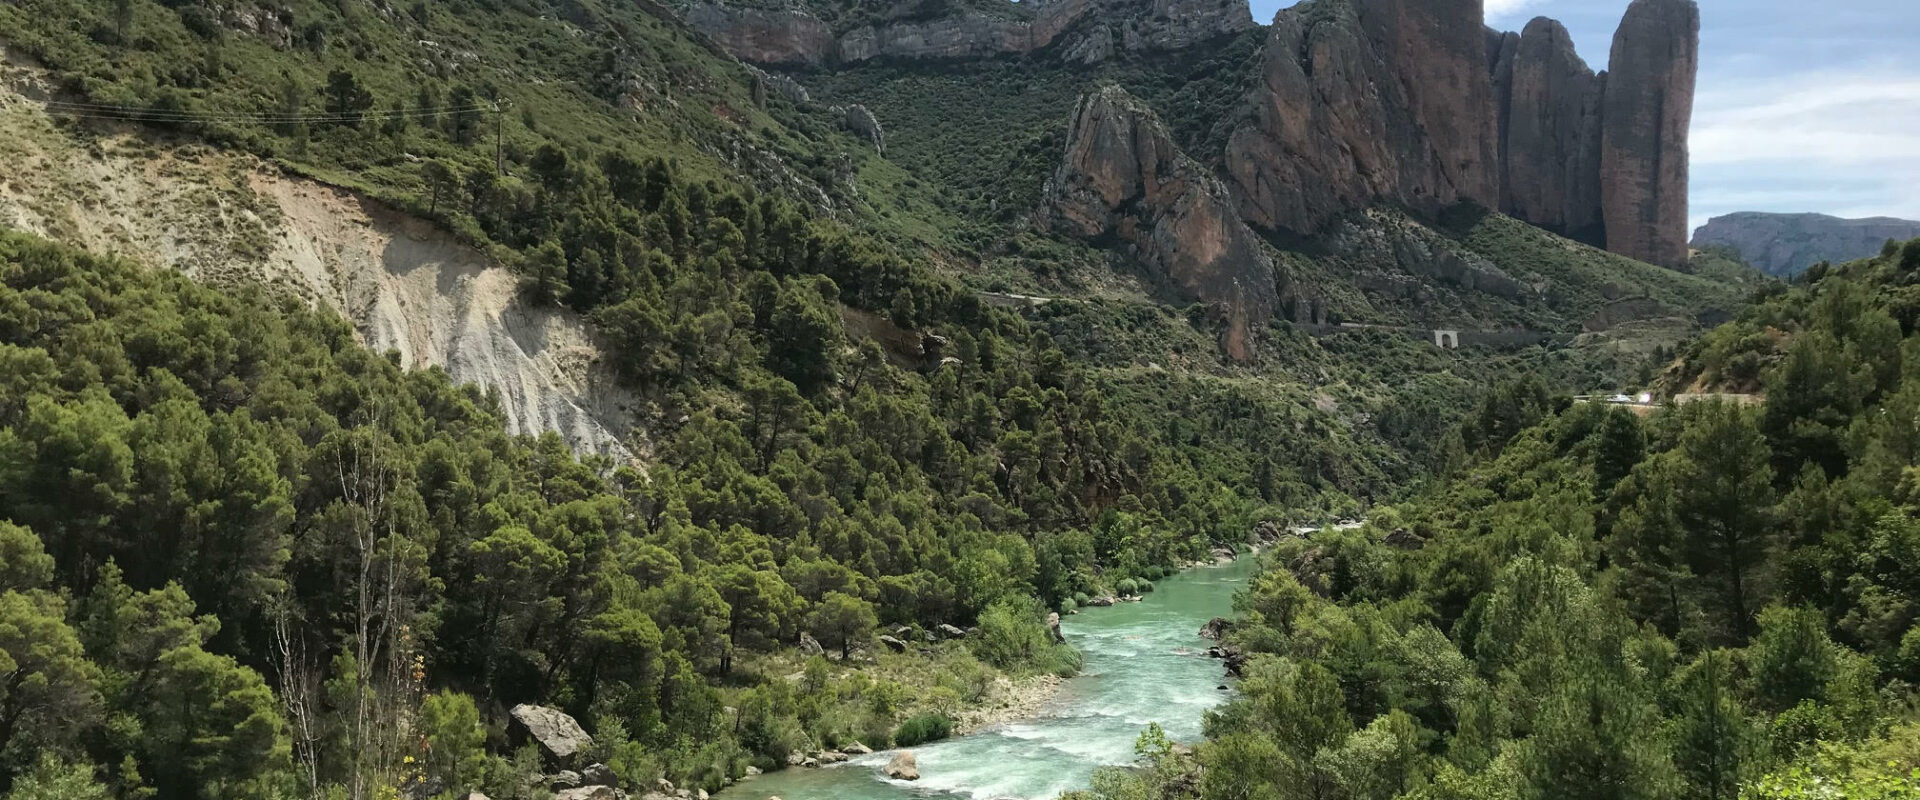 Découvrir les falaise de Riglos en Espagne